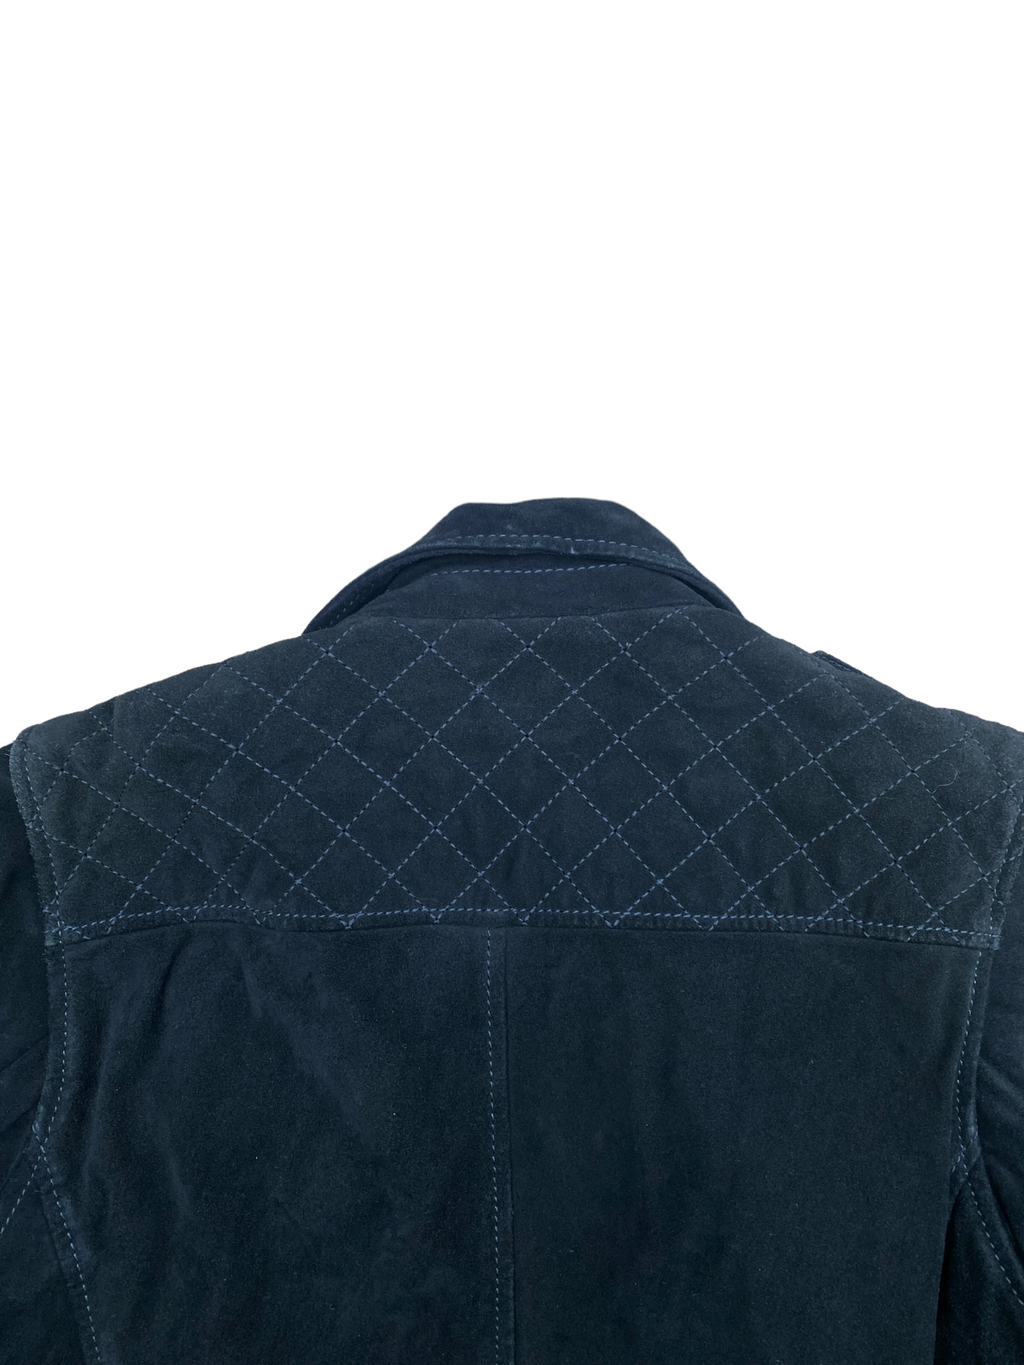 Black Suede Biker Leather Jacket